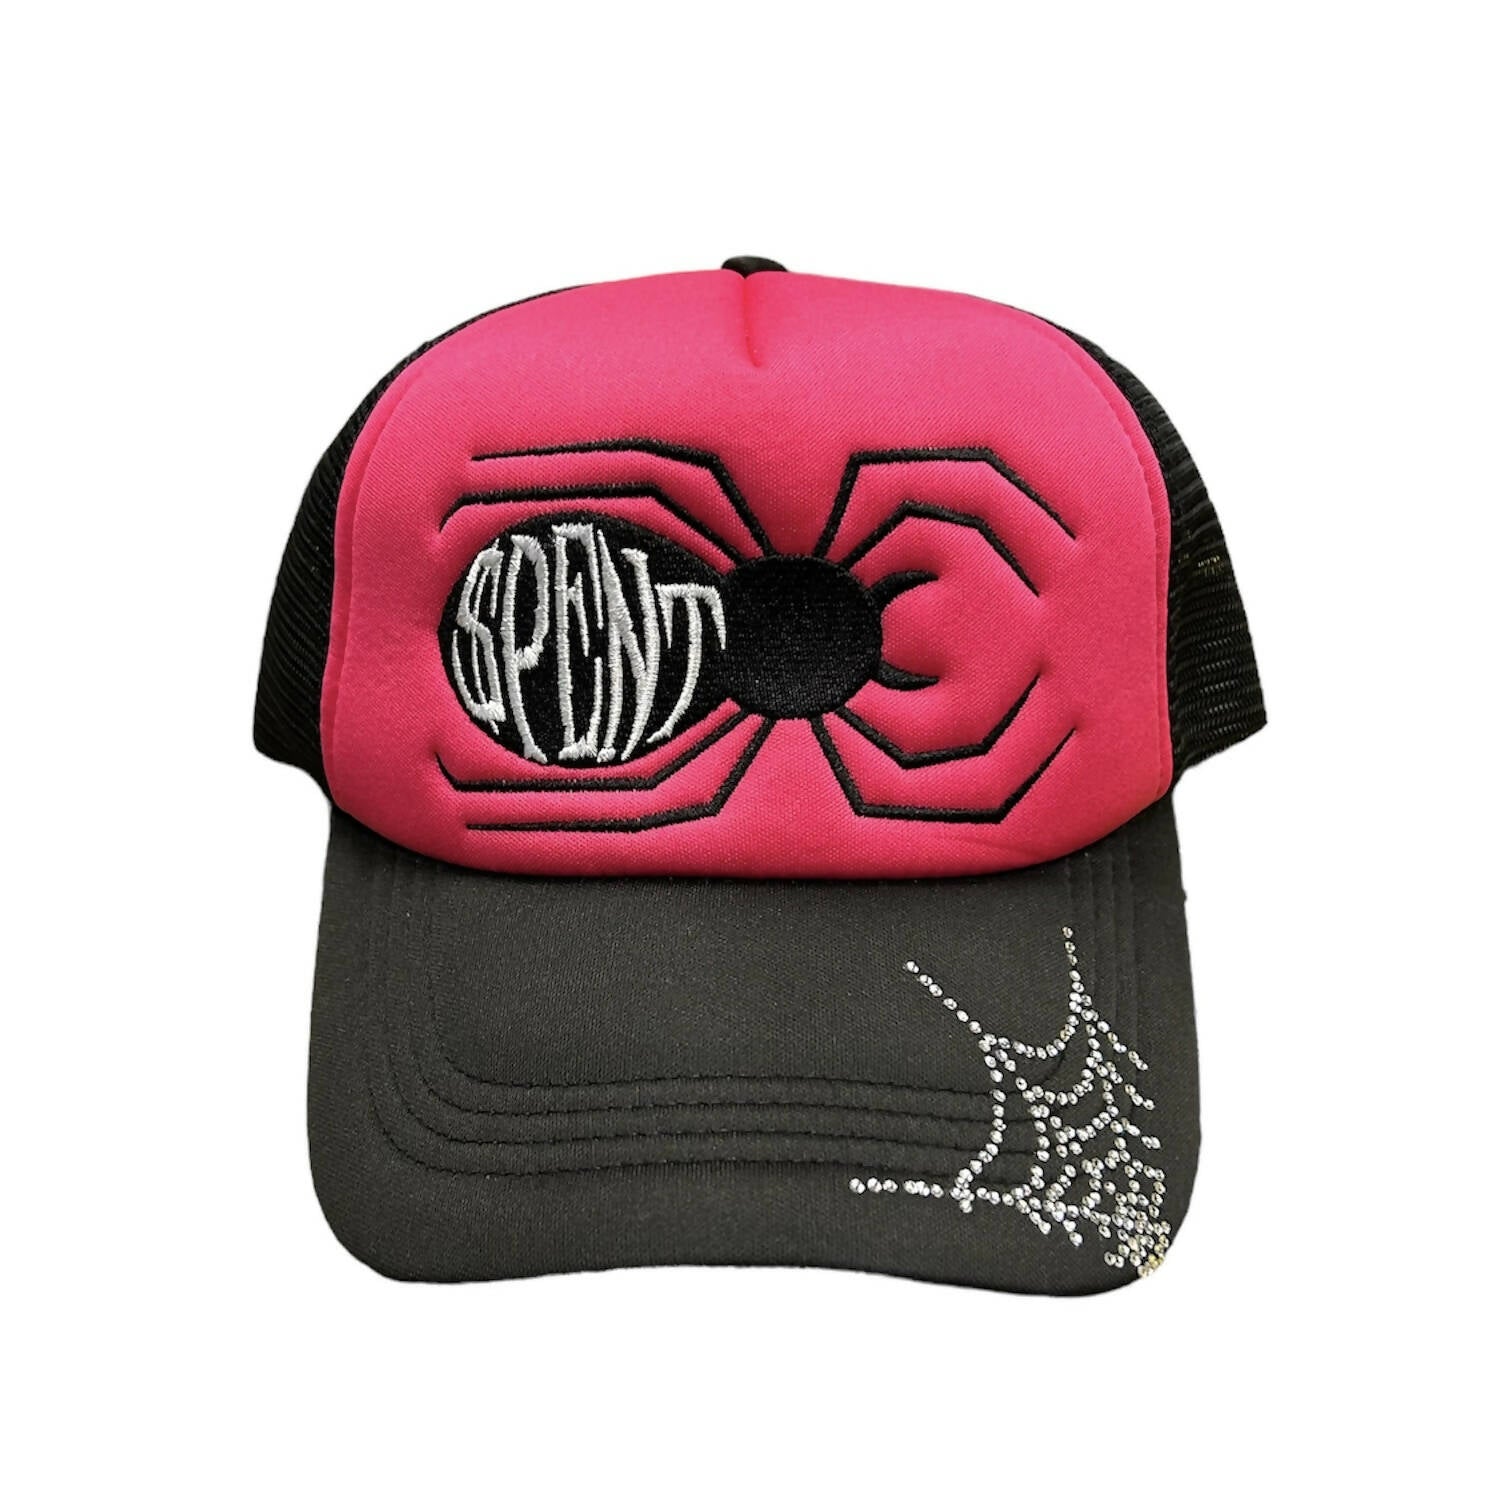 Hot Pink “$pider” Trucker hat